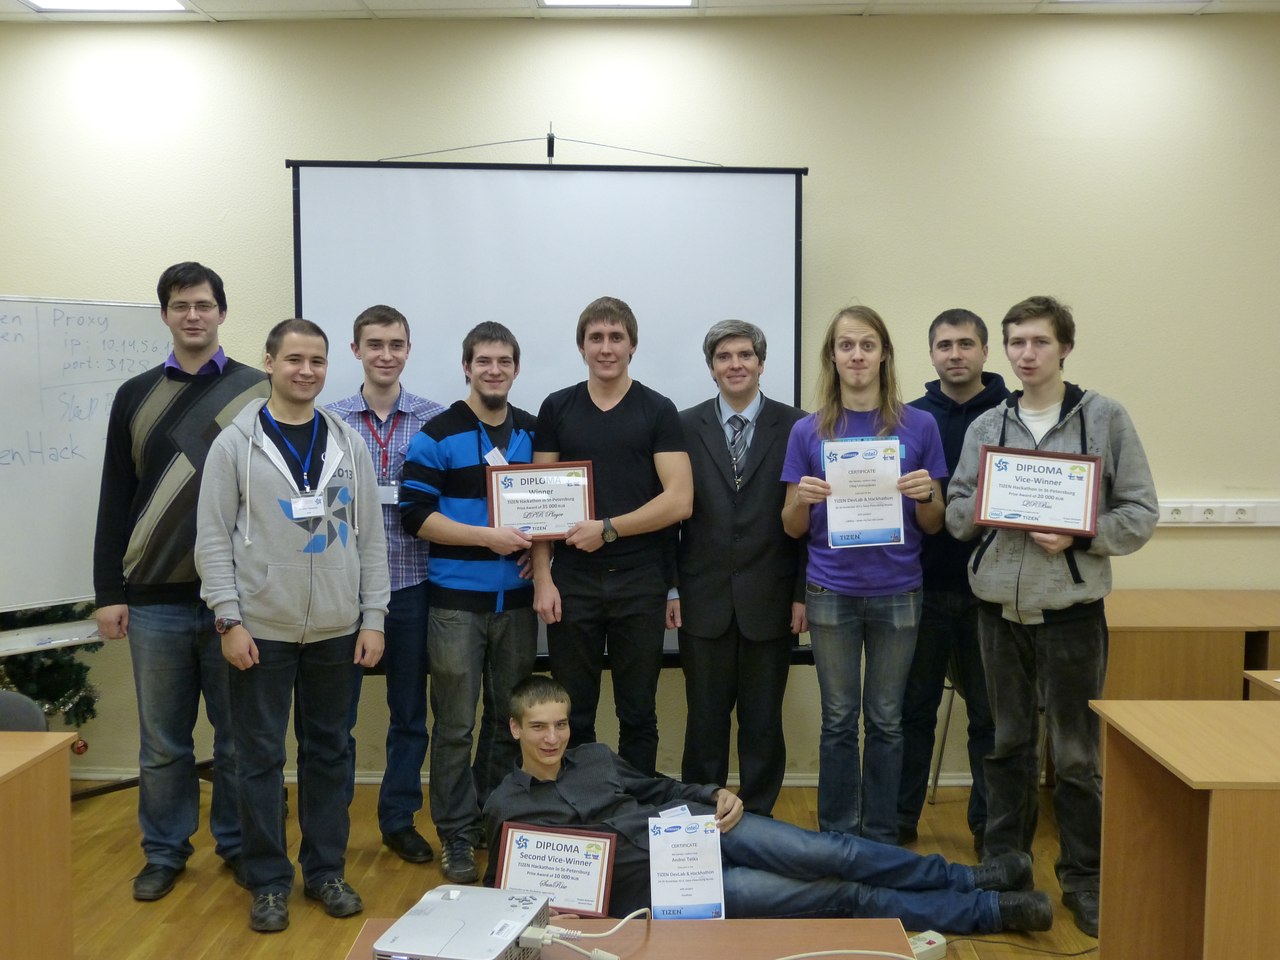 November 28-30, St. Petersburg - DevLab + Hackathon